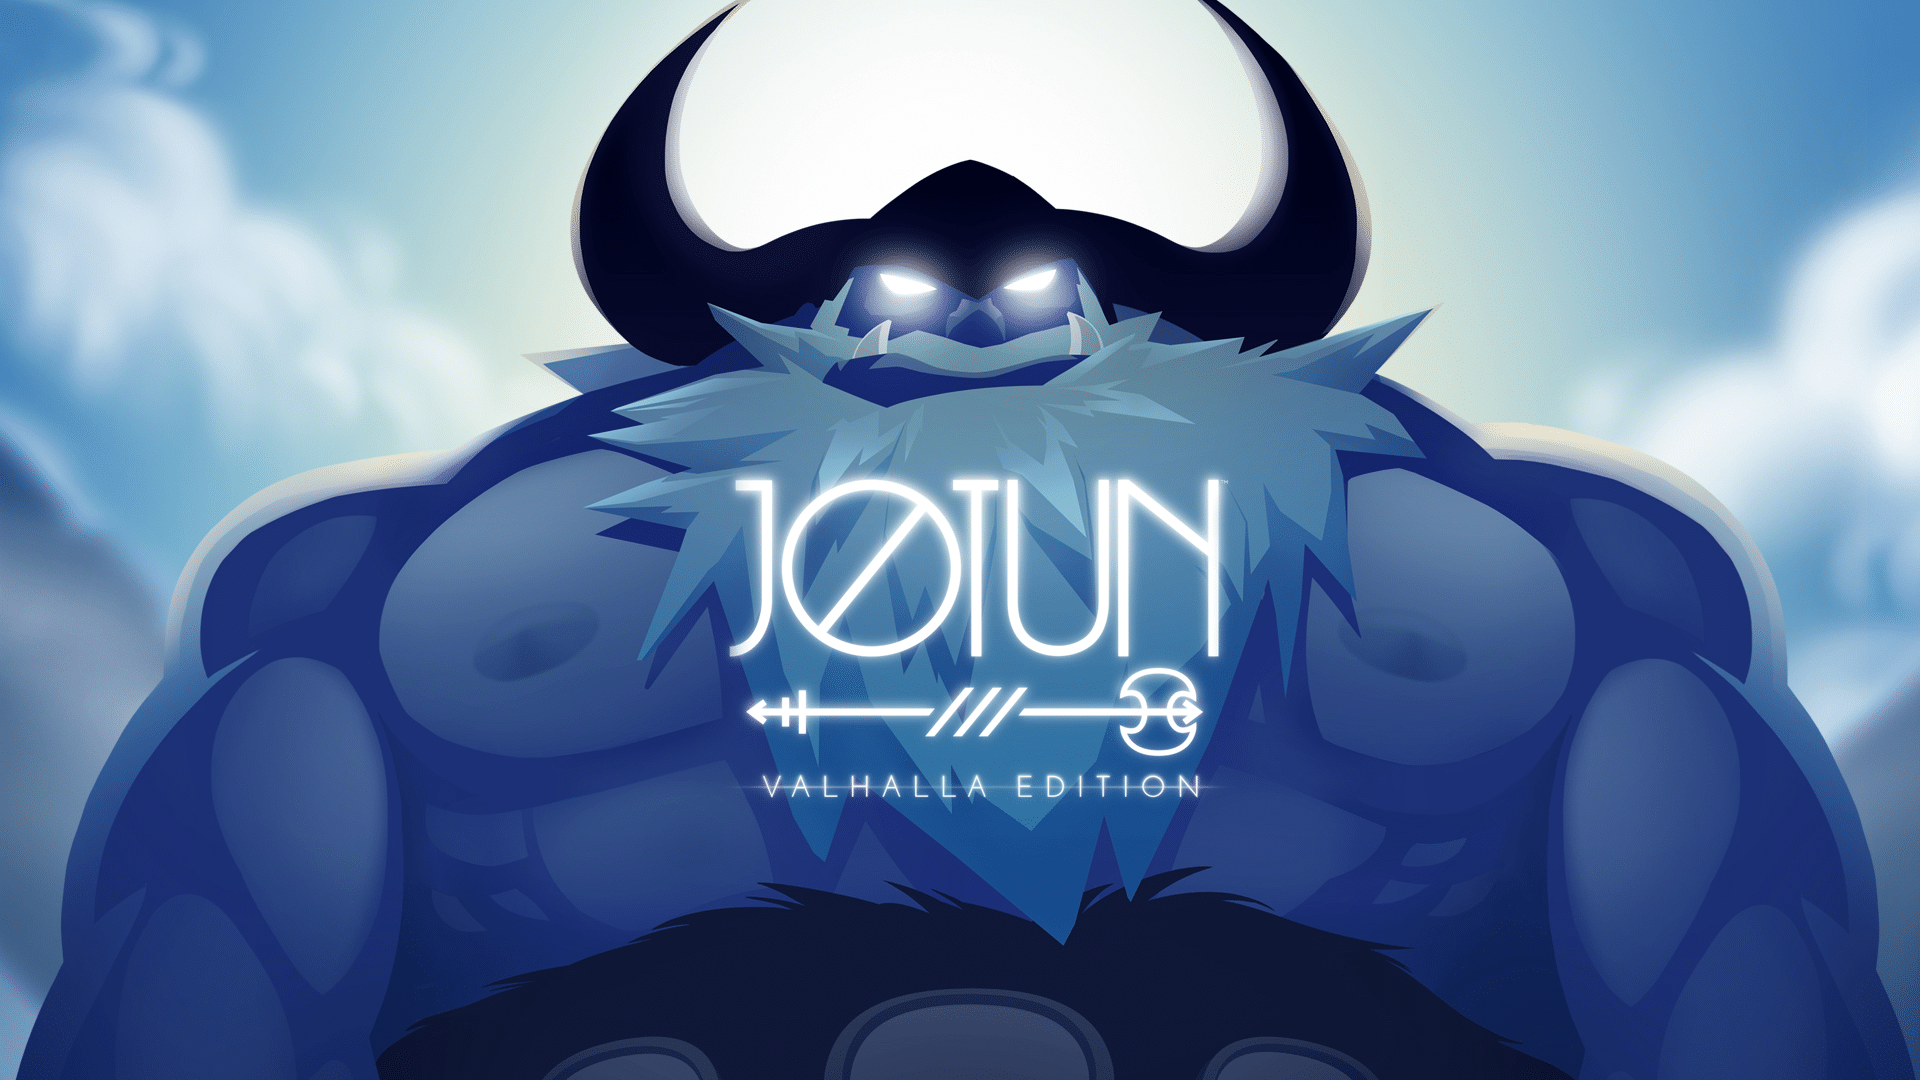 Jotun: Valhalla Edition gratis hoy en Steam y GOG